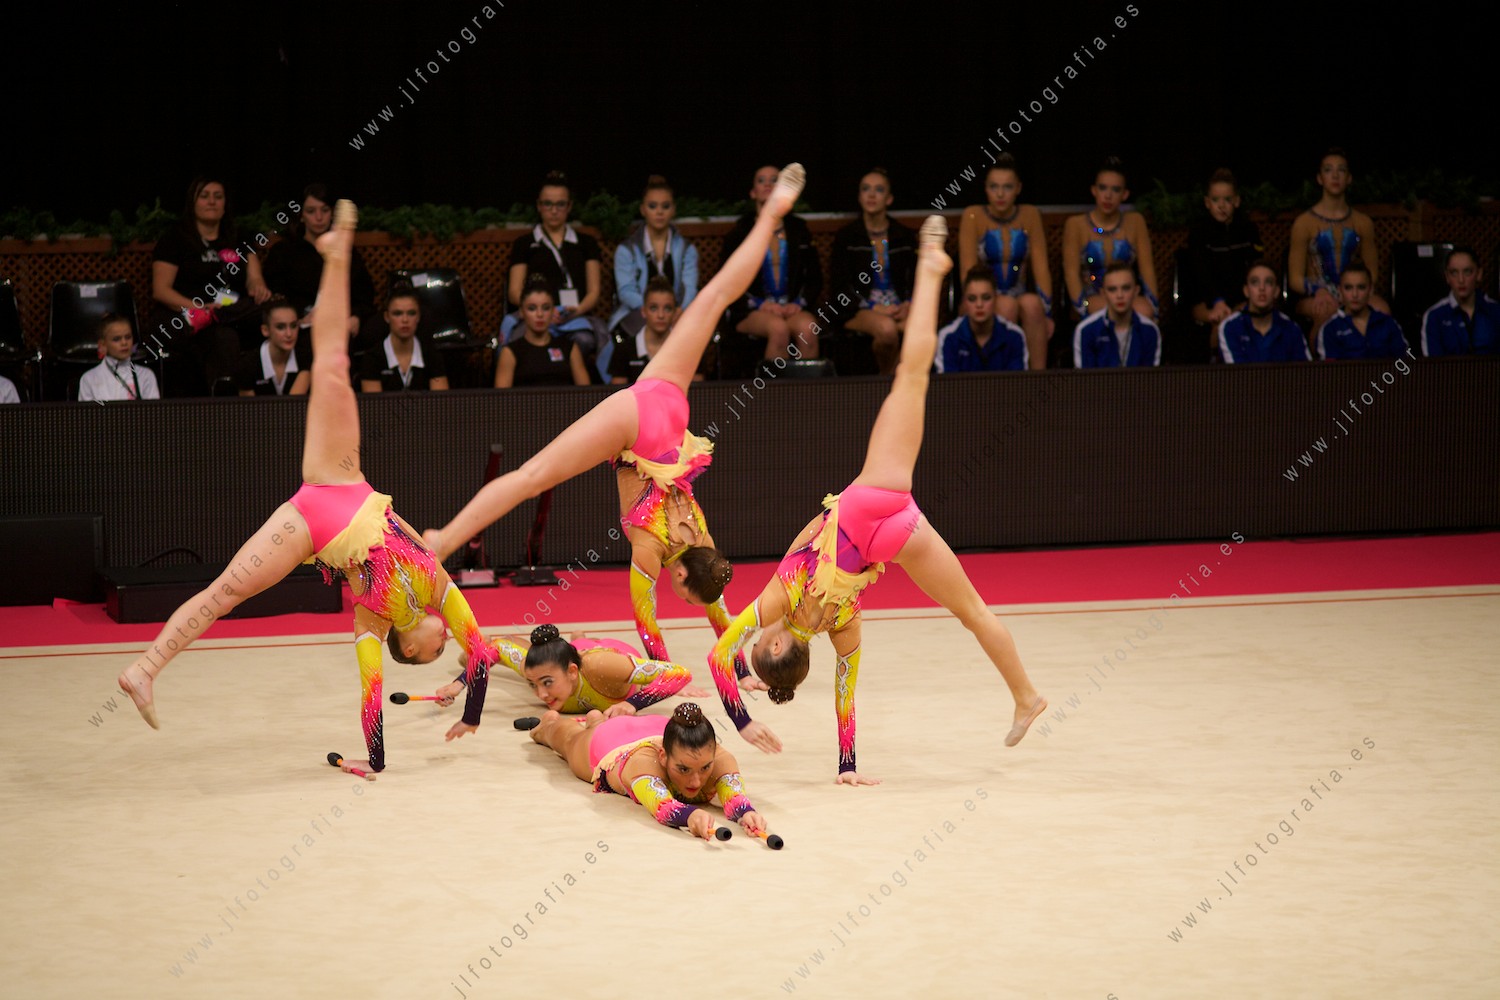 Gimnastas de rítmica por equipos en la gala del Euskalgym 10 de 2015 celebrado en el Fernando Buesa Arena de Vitoria